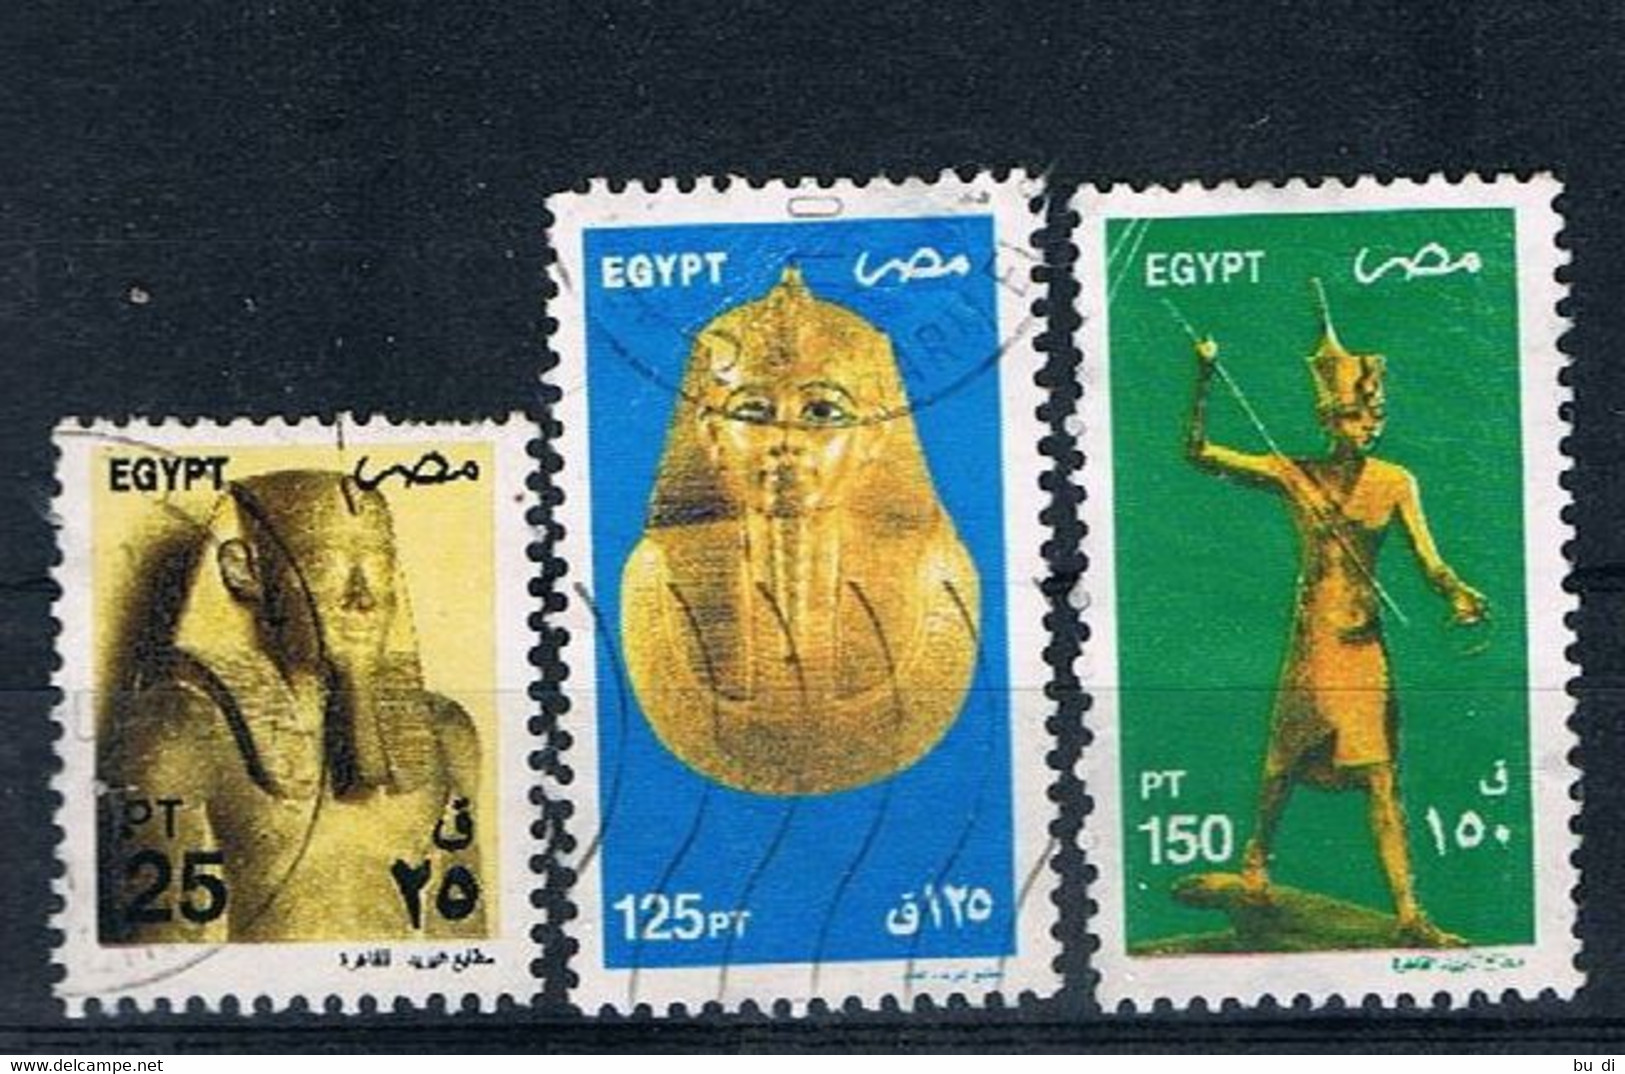 Ägypten - Egypt - 2081 2089 2090 - ägyptische Kunst - Statue, Totenmaske, U.a. Tut-ench Amun - Gebruikt